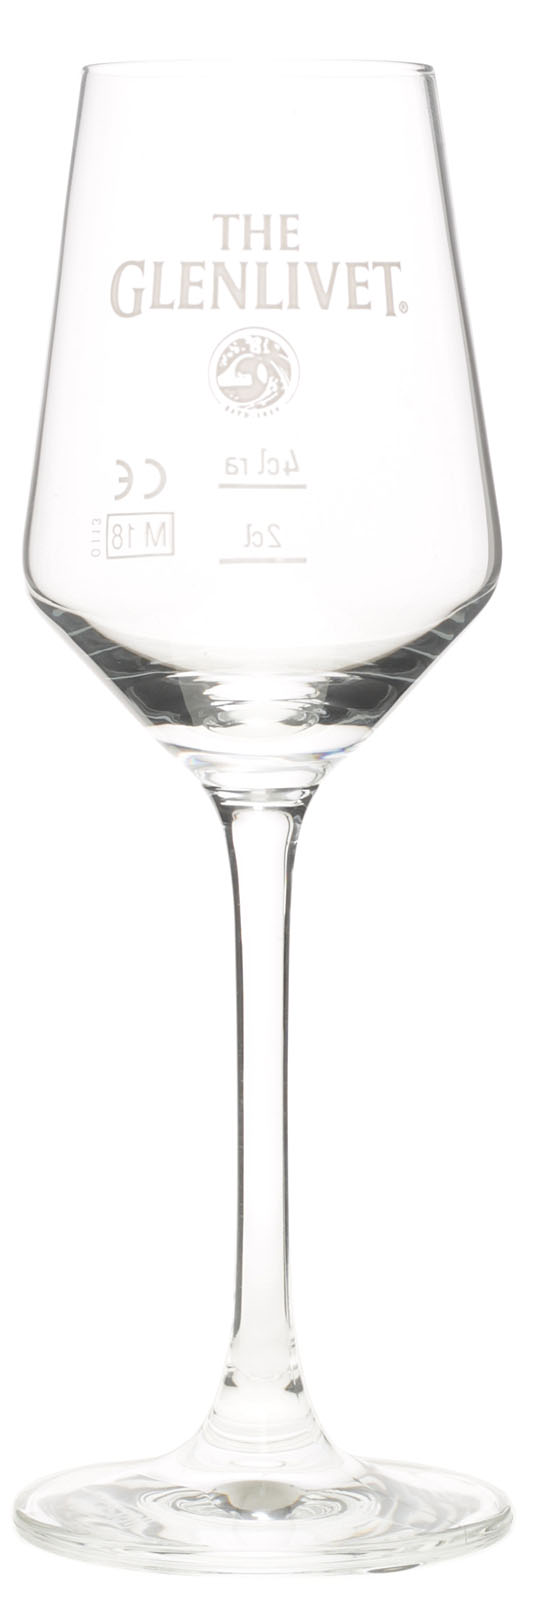 The Glenlivet Scotch Whisky bauchiges Tastingglas schmaler Stiel Nosing 766 